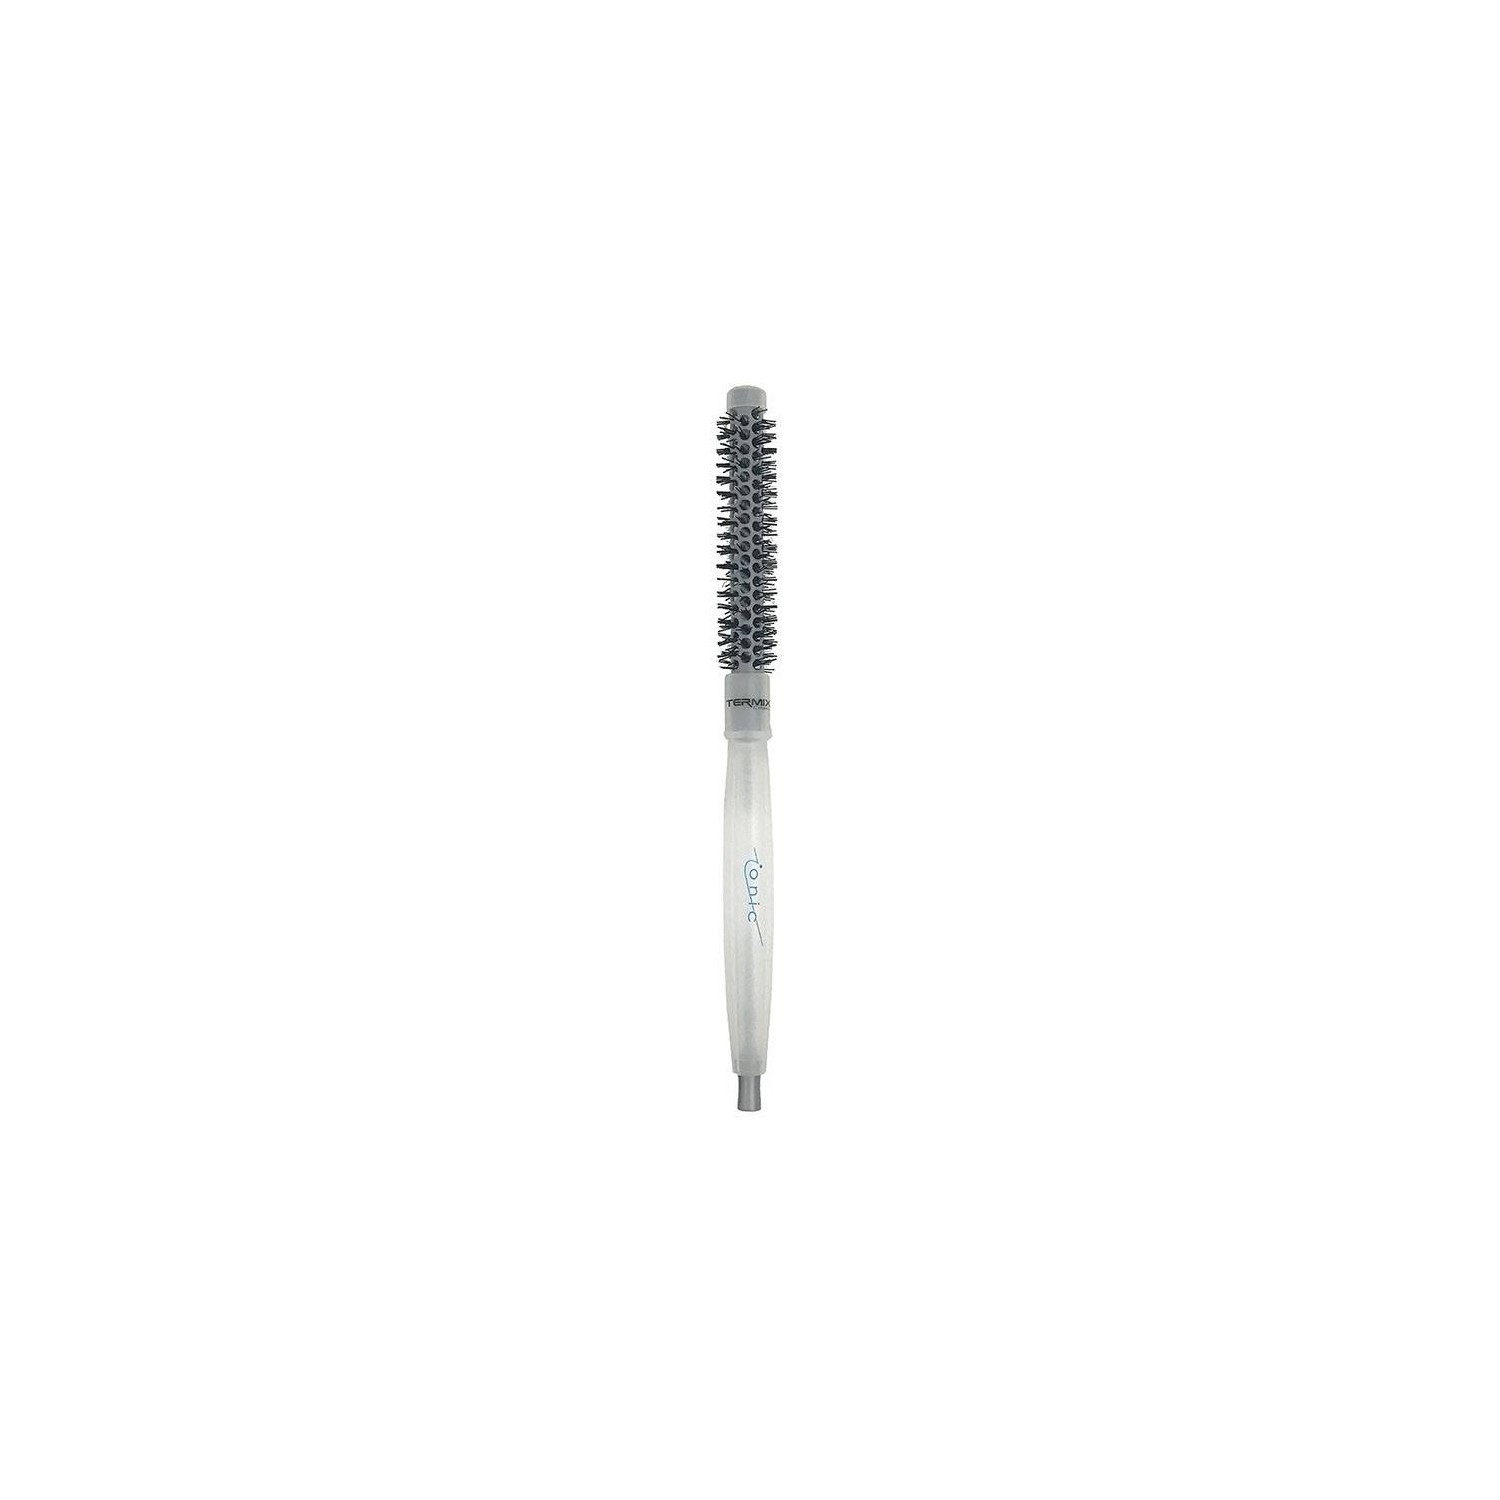 Termix Hairbrush C.ramic Ionic 23mm